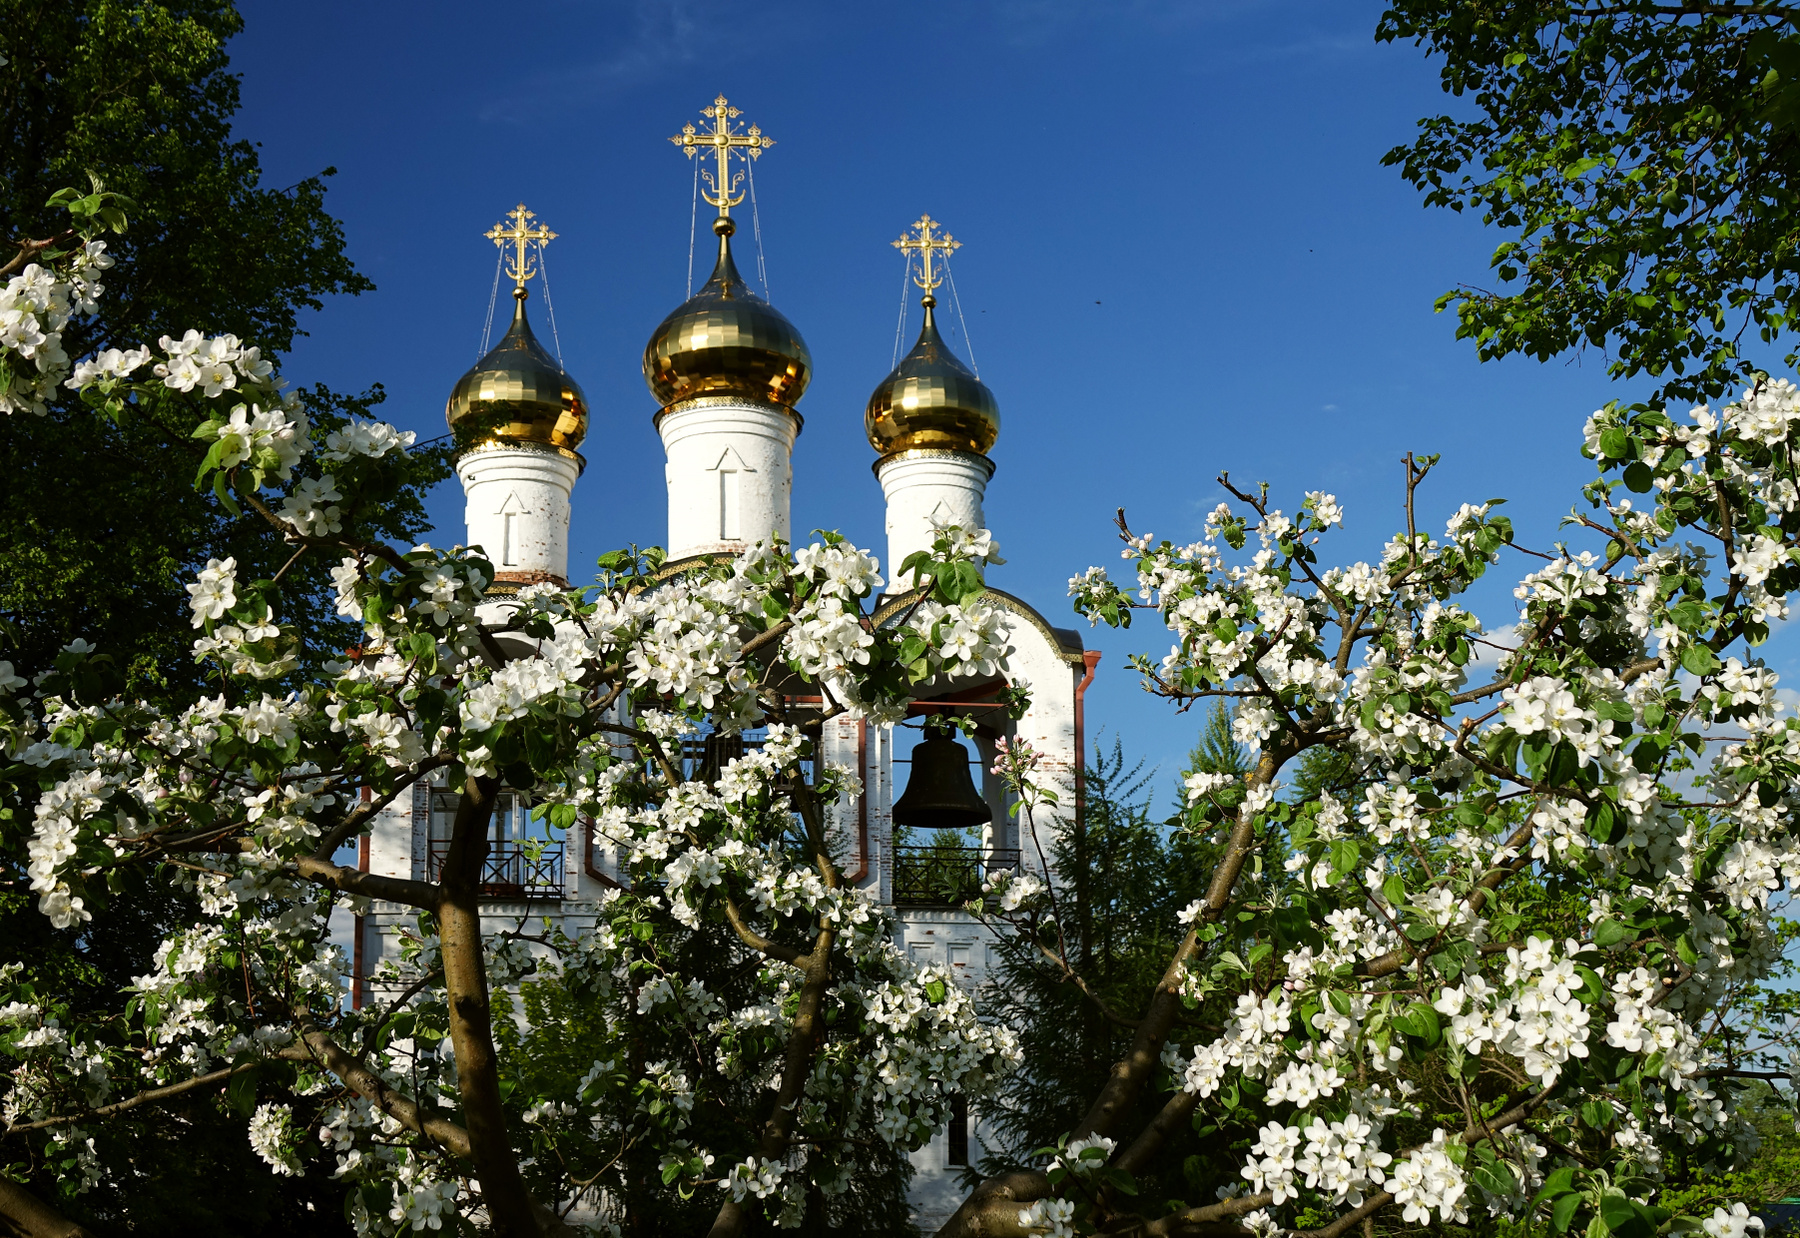 Весна в монастырском саду цветущие яблони монастырь